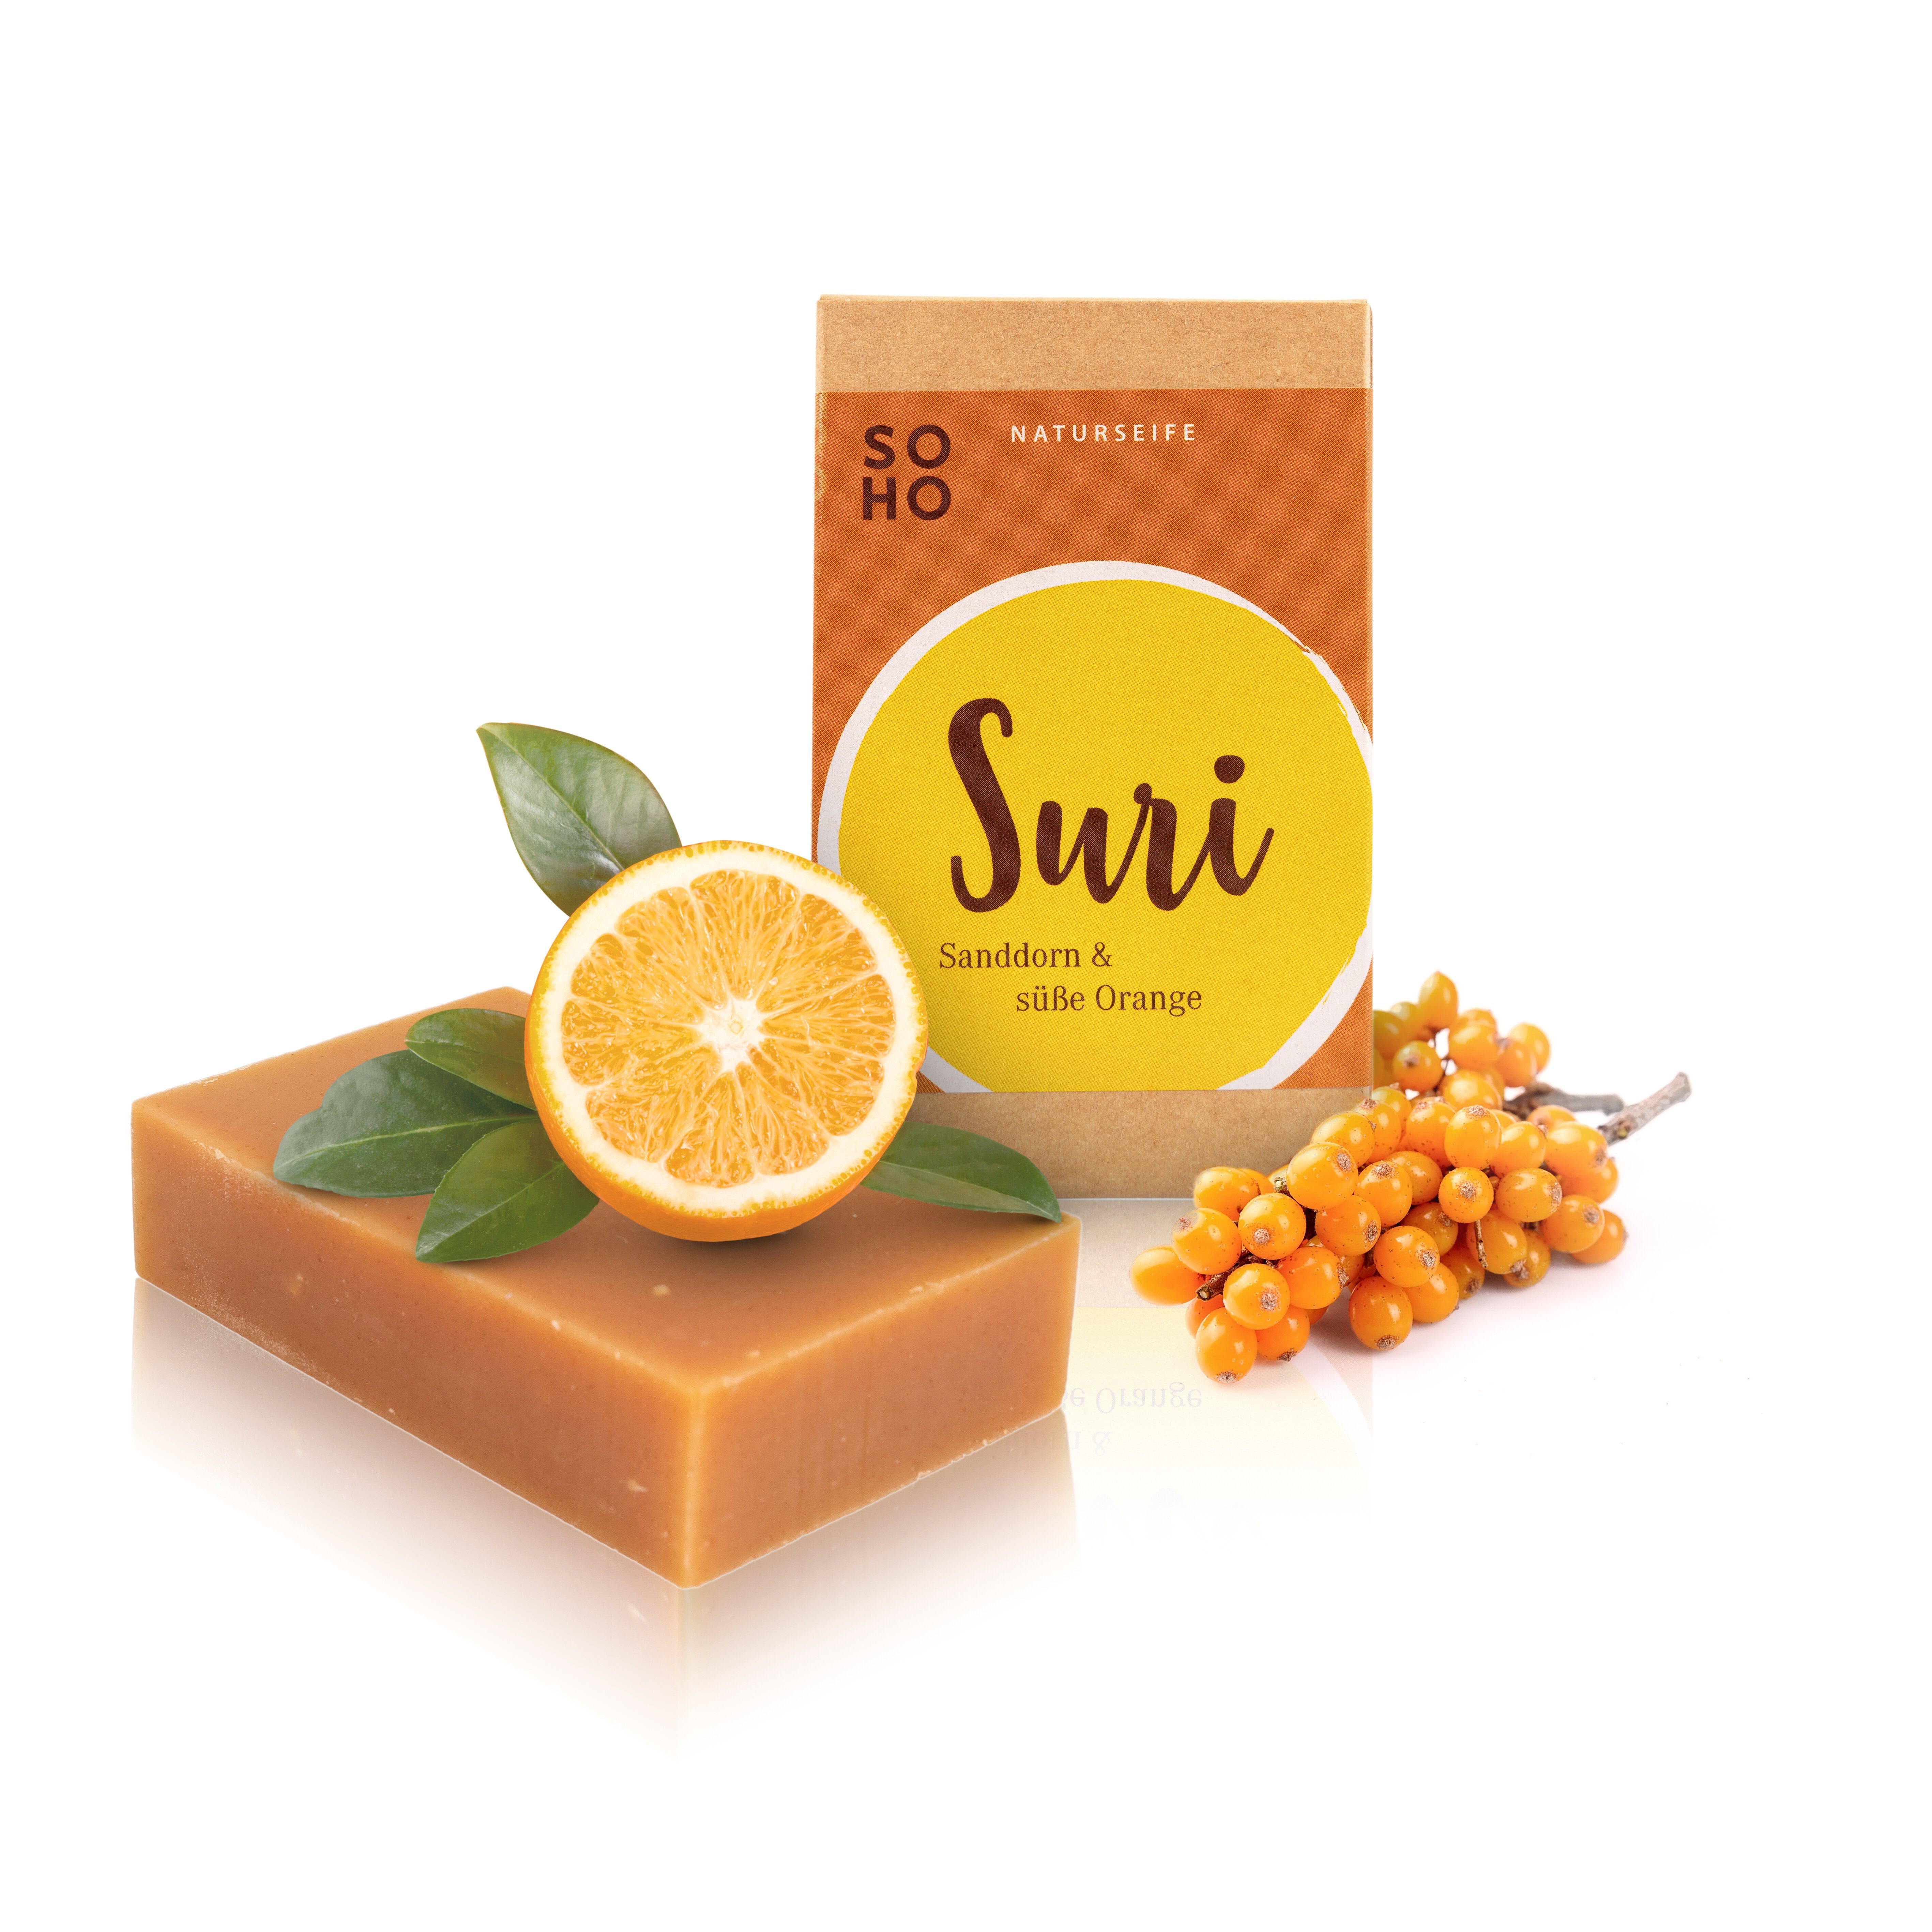 Naturkosmetik SOHO cremige & Orange SURI Feste Sanddornextrakt mit Fruchtig, süßer Duschpflege Duschseife